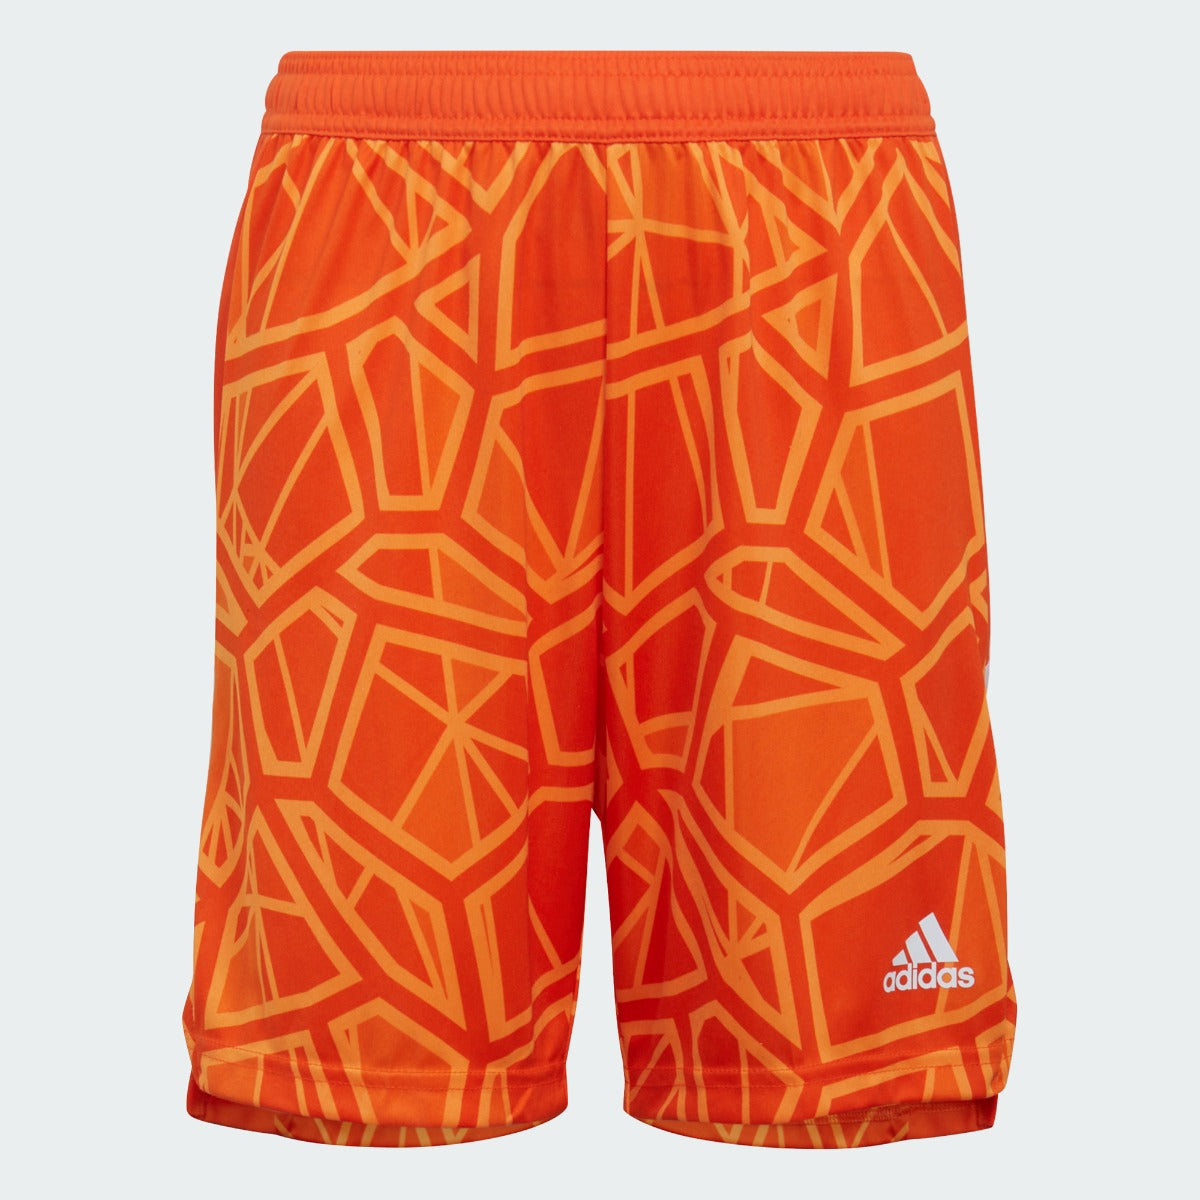 adidas Condivo 22 Youth Goalkeeper Shorts - Orange (Front)